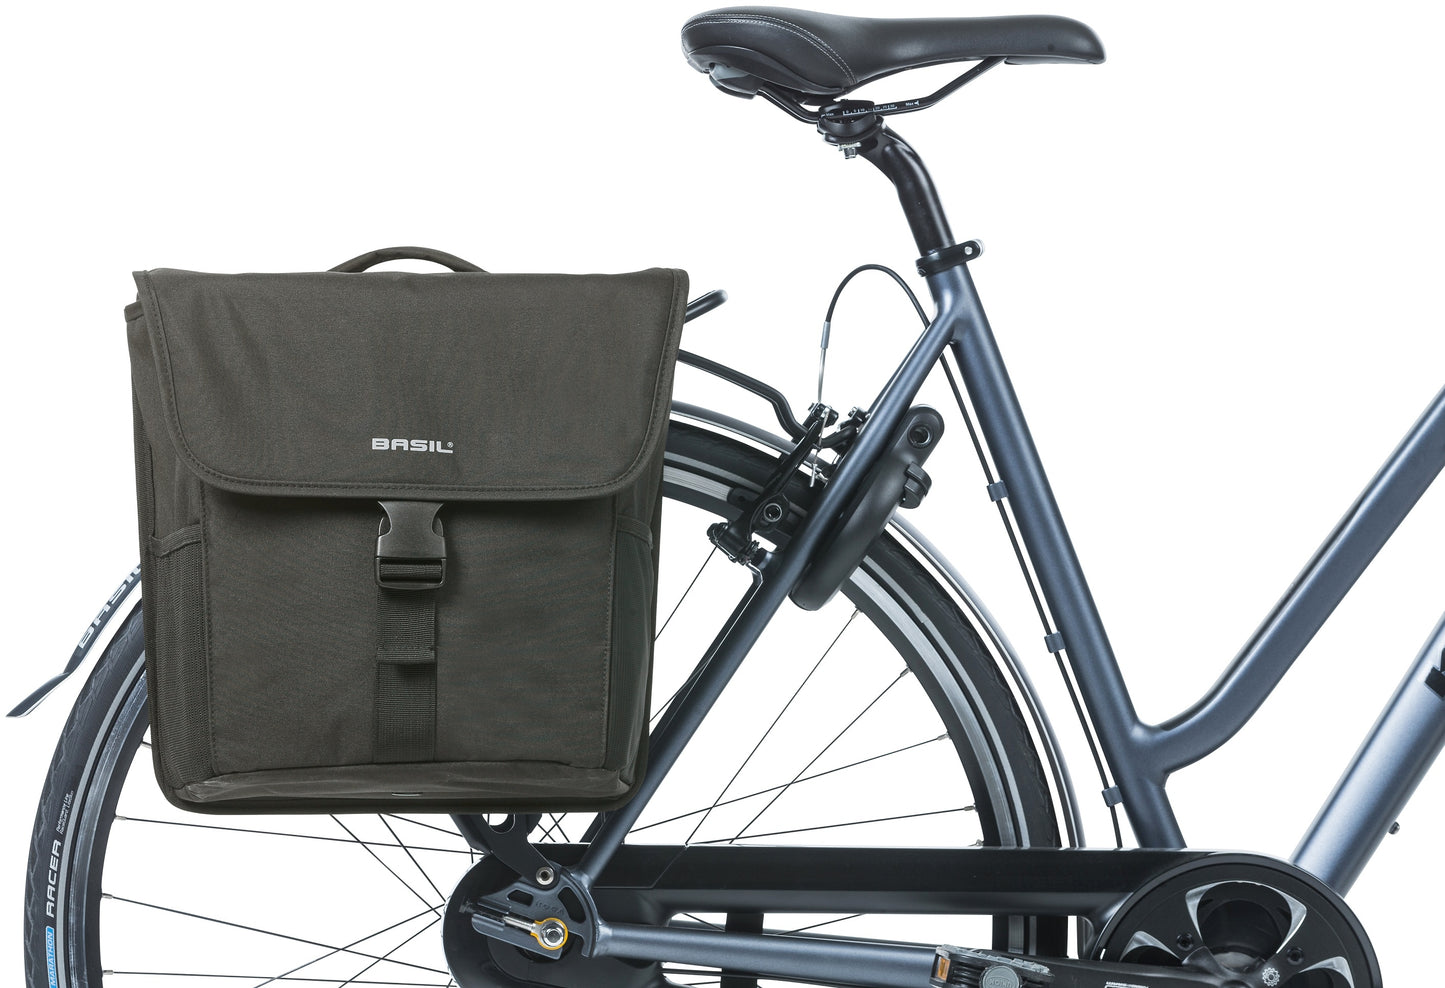 Basil Go-Double Borse Mik, doppia sacca per biciclette, nero, 32L, adatto per le trasporto di trasporto di sistemi MIK